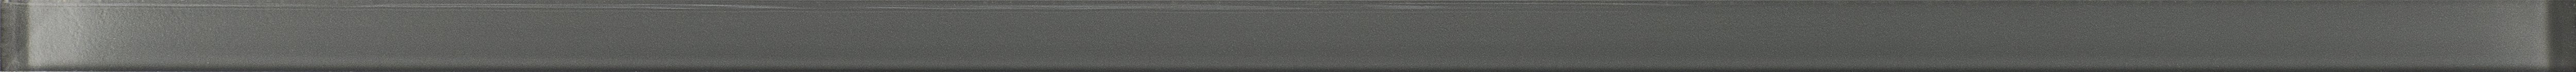 Ceramika Konskie LU 87 grey - obkládačka listela 1,5x50 šedá 156252, cena za 1.000 ks